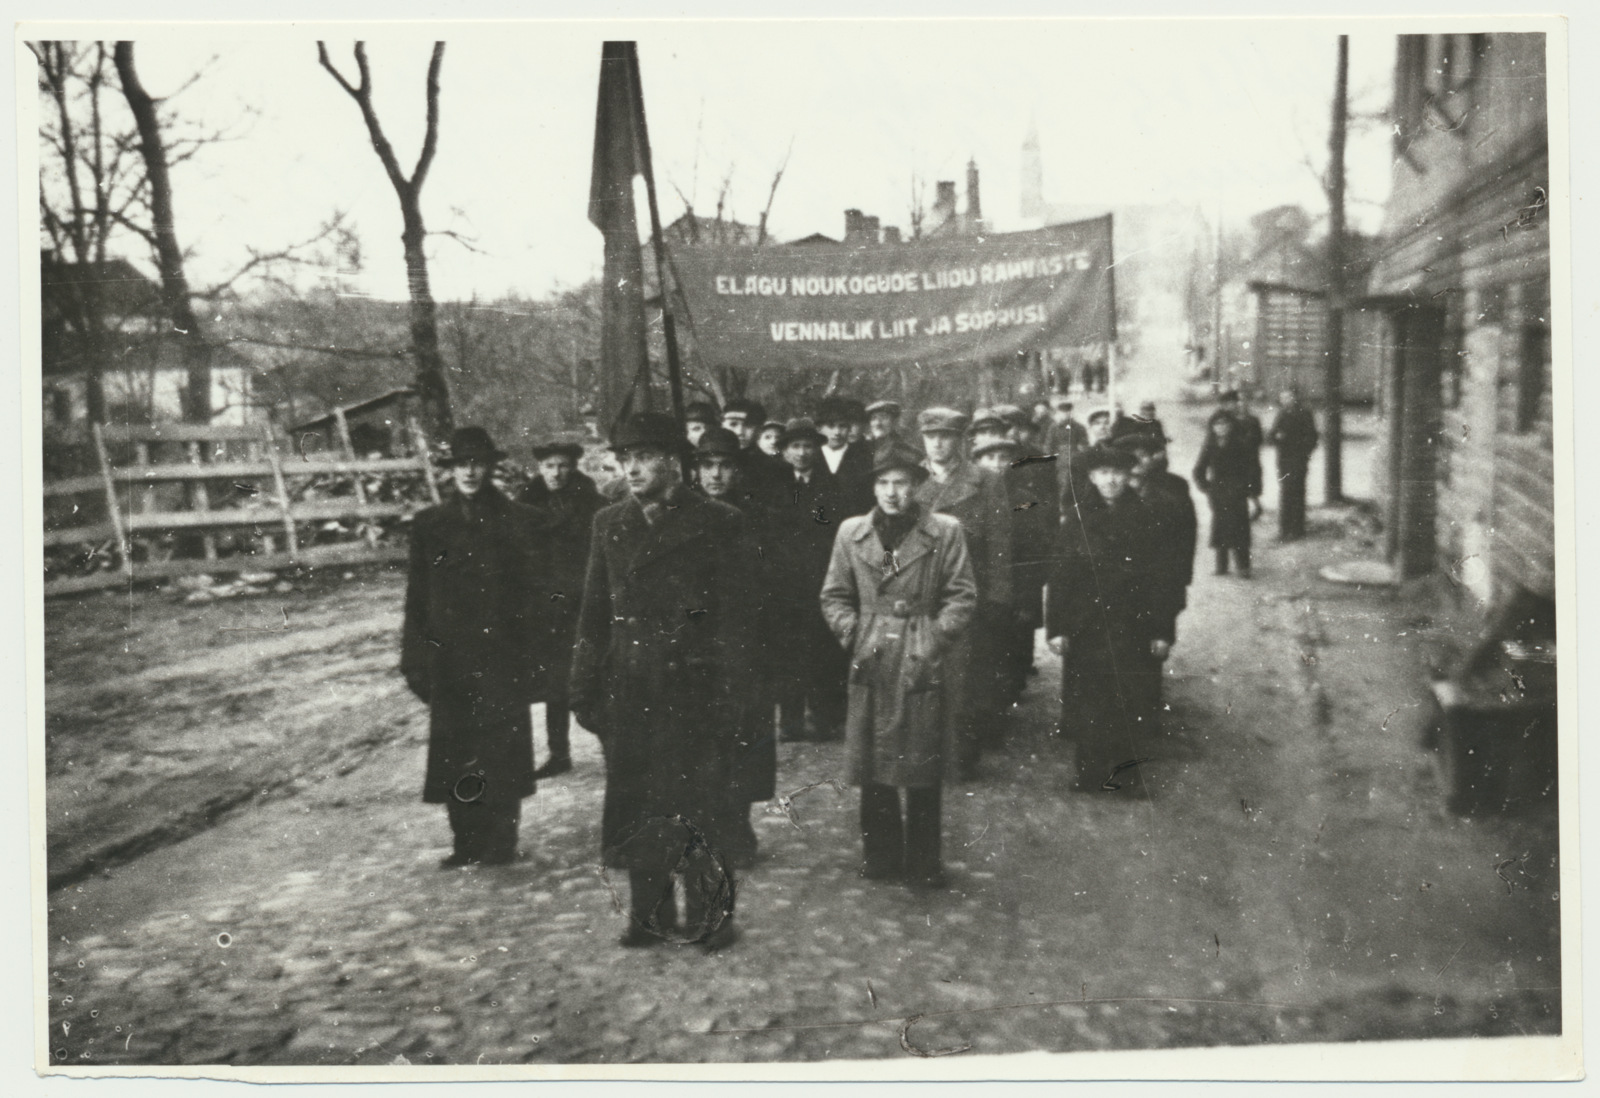 foto Viljandi, Oktoobrirevolutsiooni demonstratsioon, Ungern-Sternberg'i töökodade töötajad, 1940